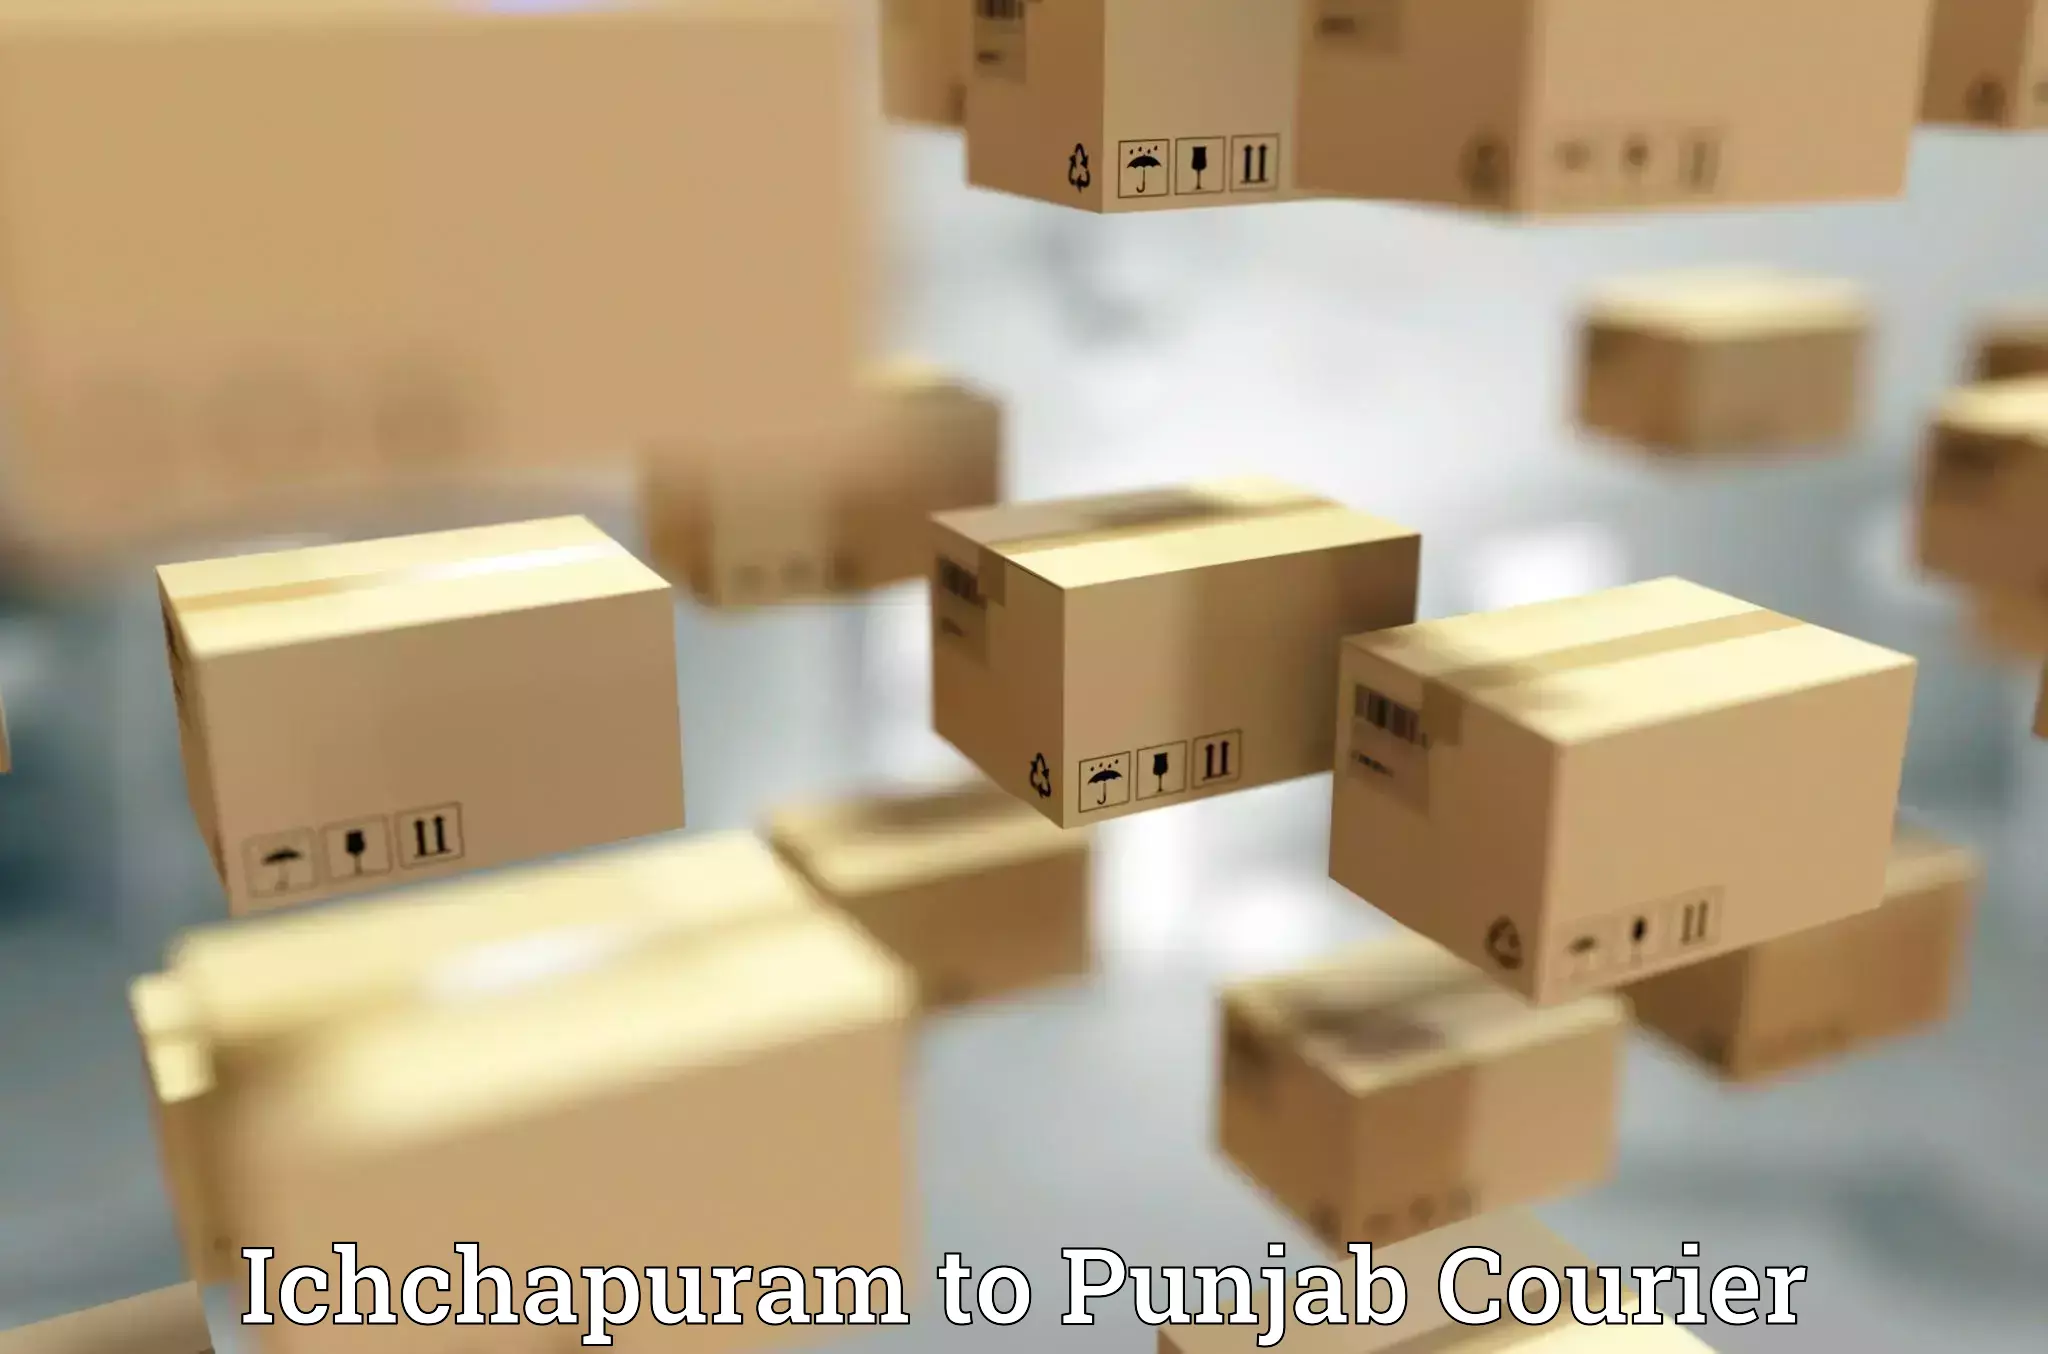 Urgent courier needs Ichchapuram to Dinanagar